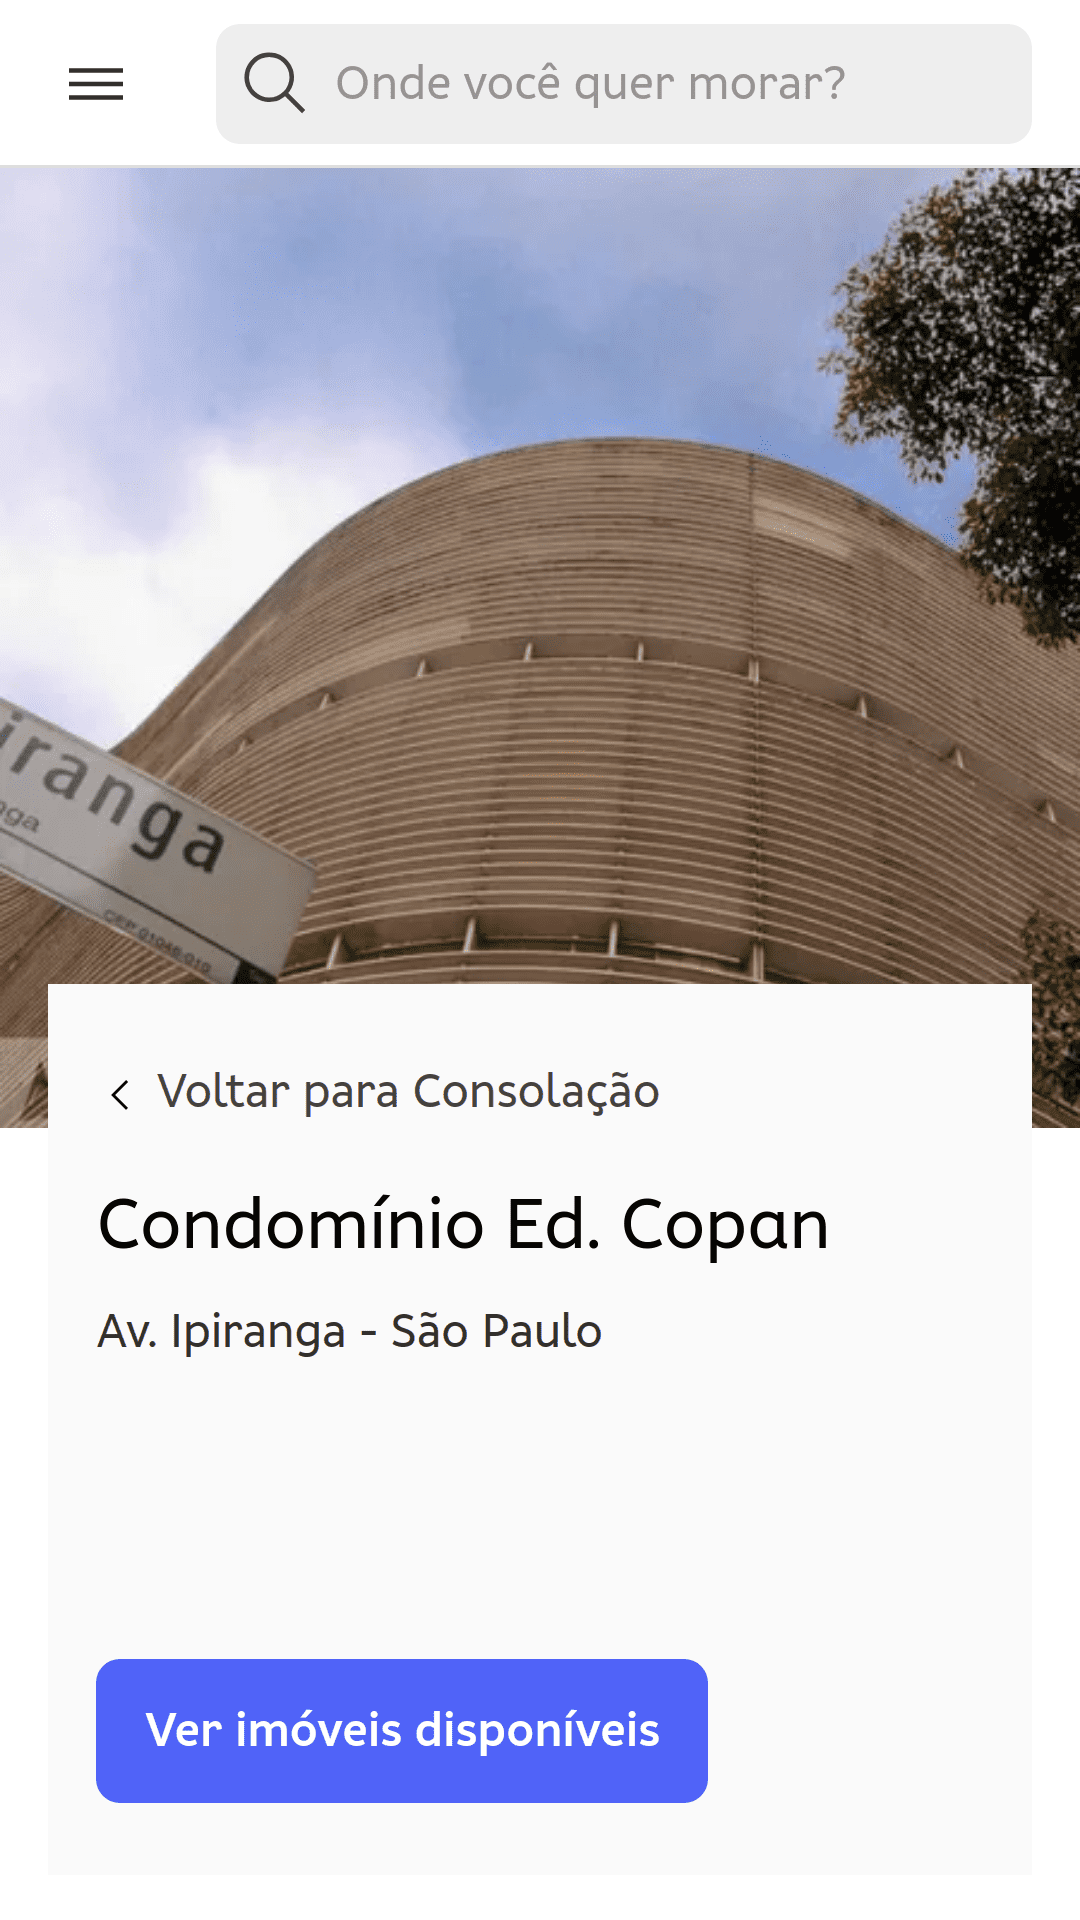 Trang chung cư của Edifício Copan (São Paulo, Brazil). Ảnh chụp từ mặt đất cho thấy các đường cong của cấu trúc toà nhà.